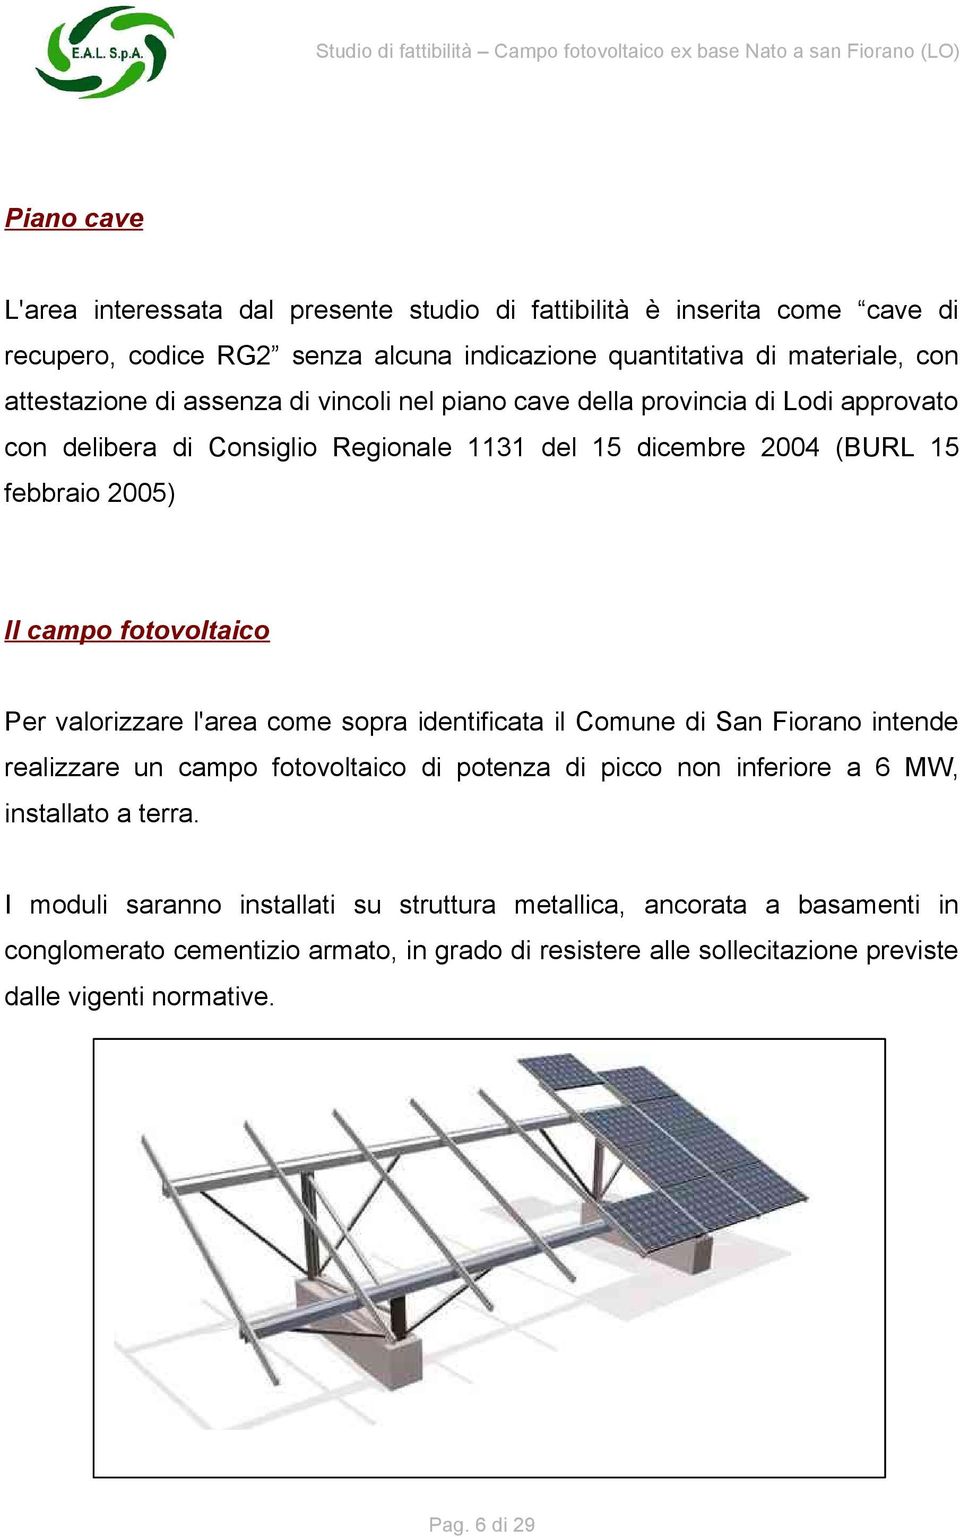 valorizzare l'area come sopra identificata il Comune di San Fiorano intende realizzare un campo fotovoltaico di potenza di picco non inferiore a 6 MW, installato a terra.